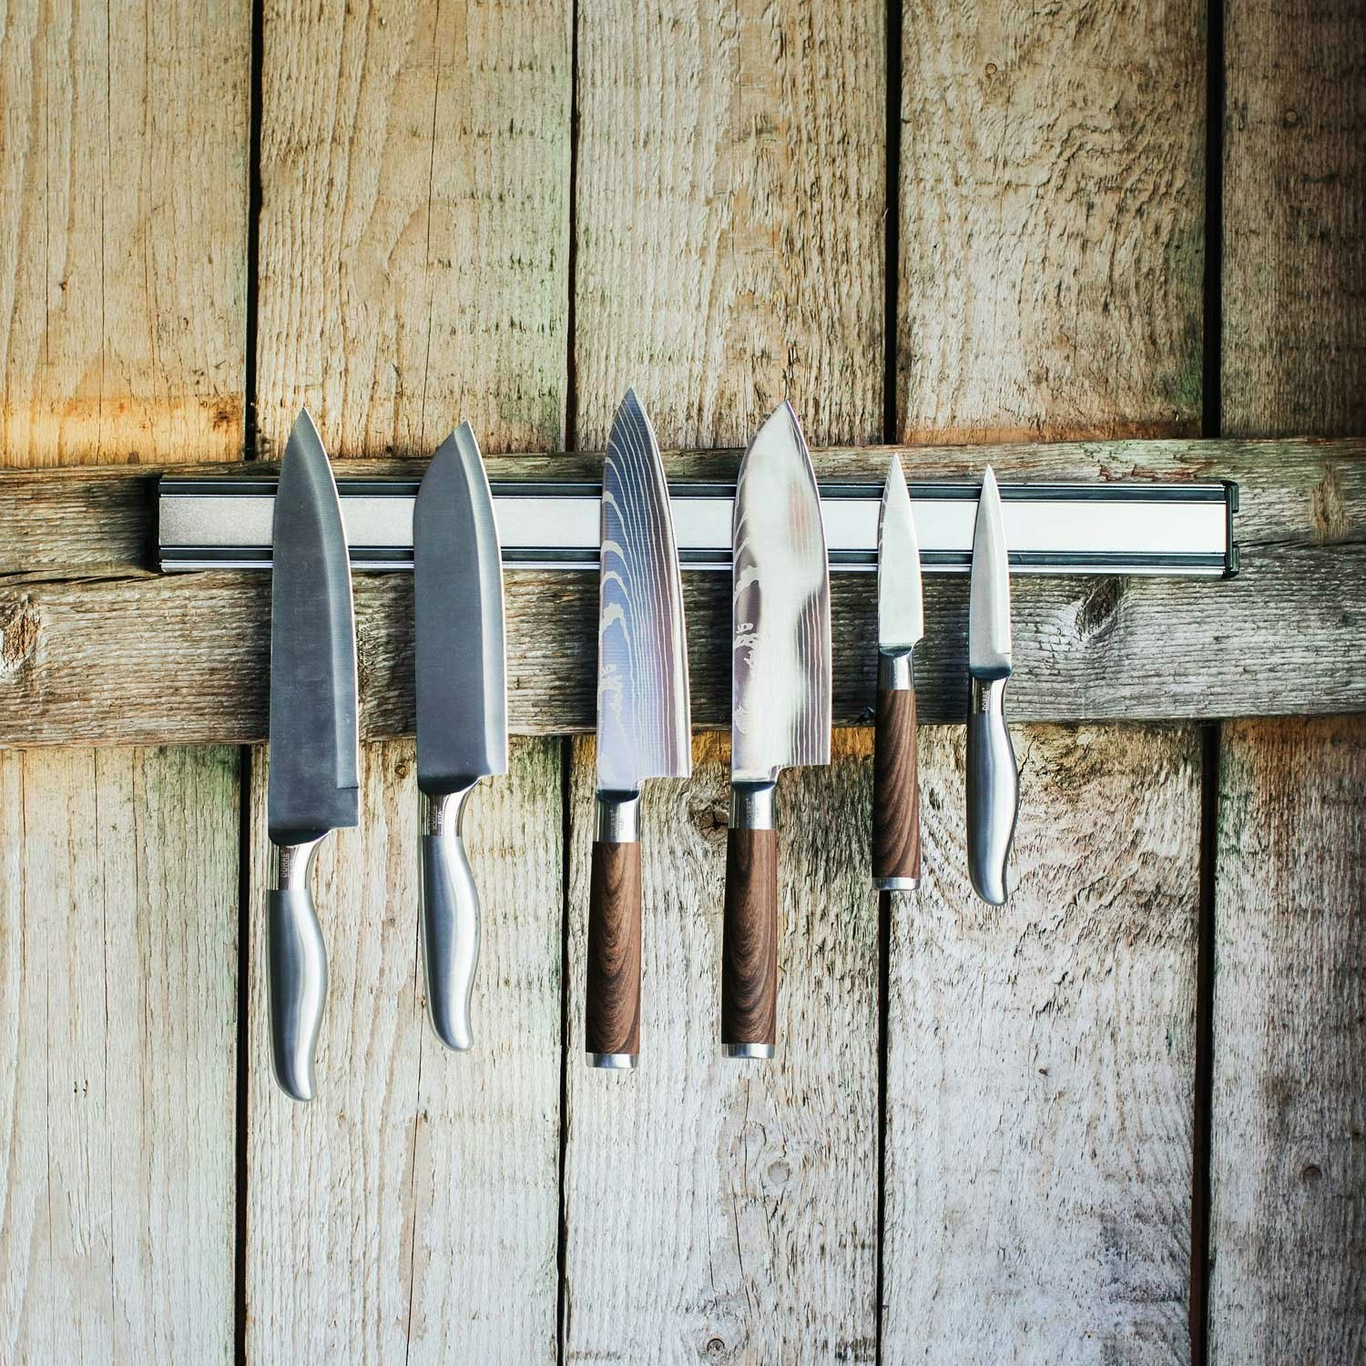 https://royaldesign.com/image/2/dorre-kita-knife-set-3-pack-4?w=800&quality=80